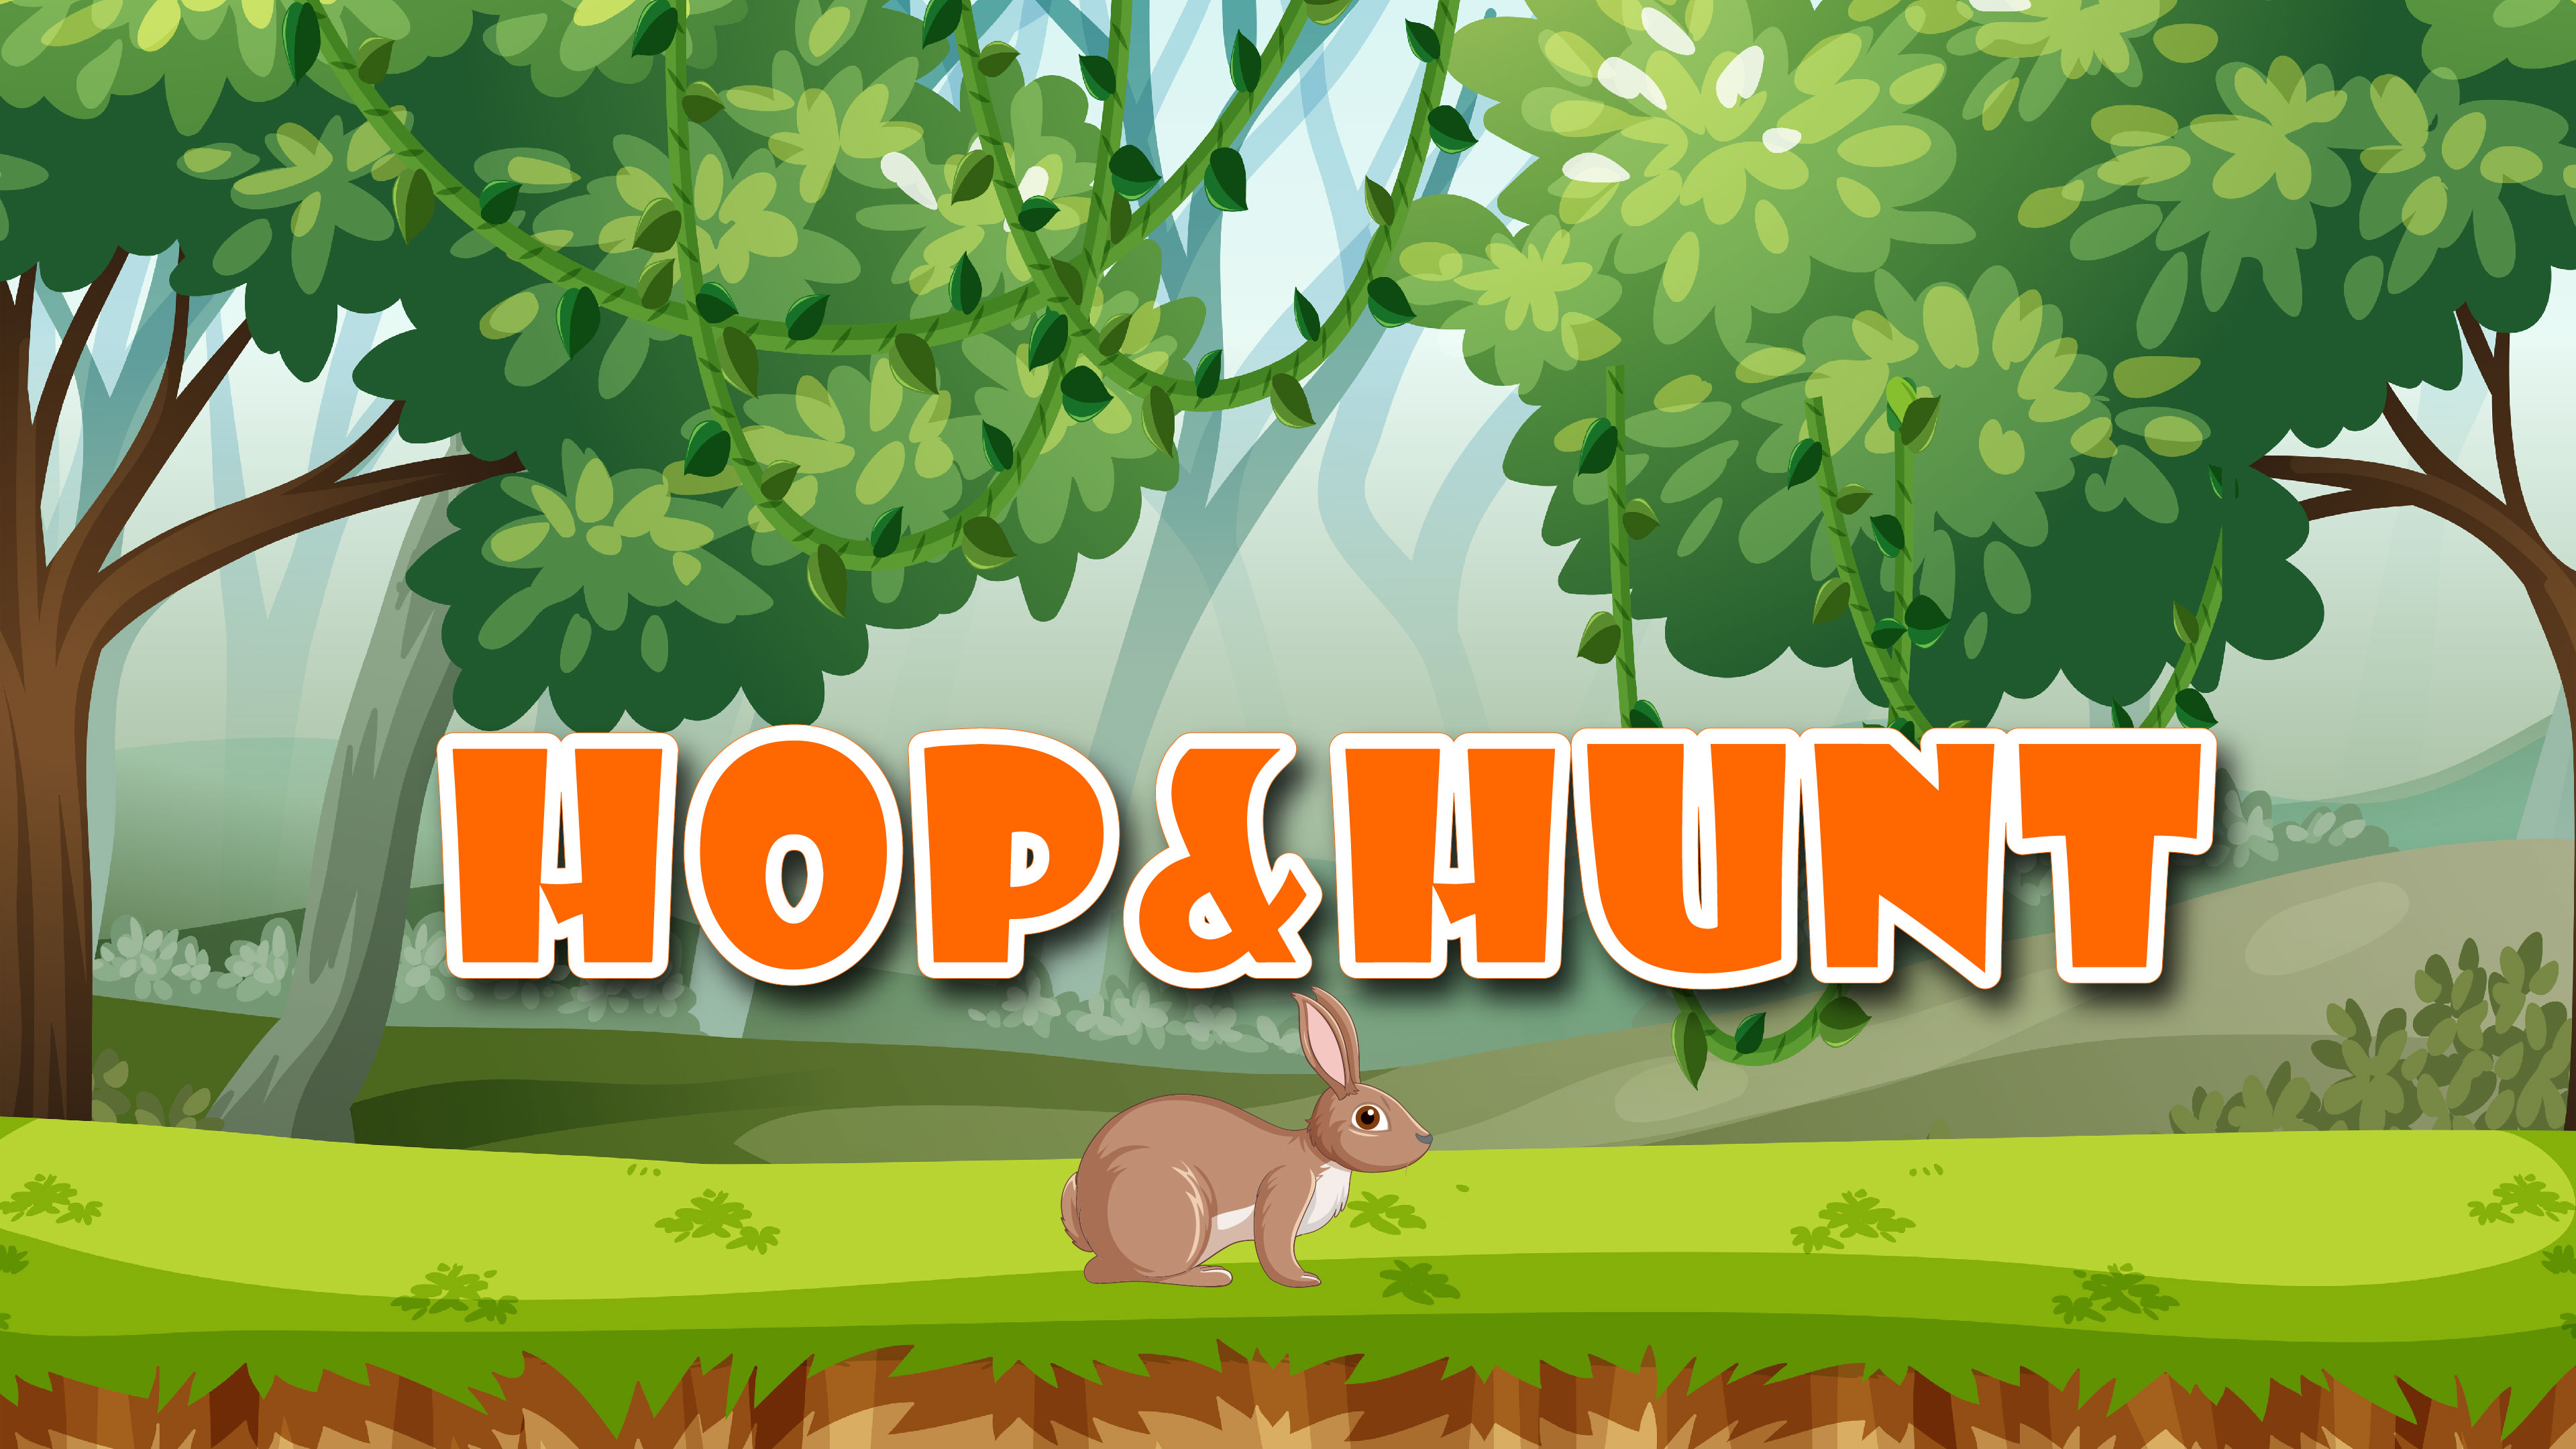 Hop & Hunt